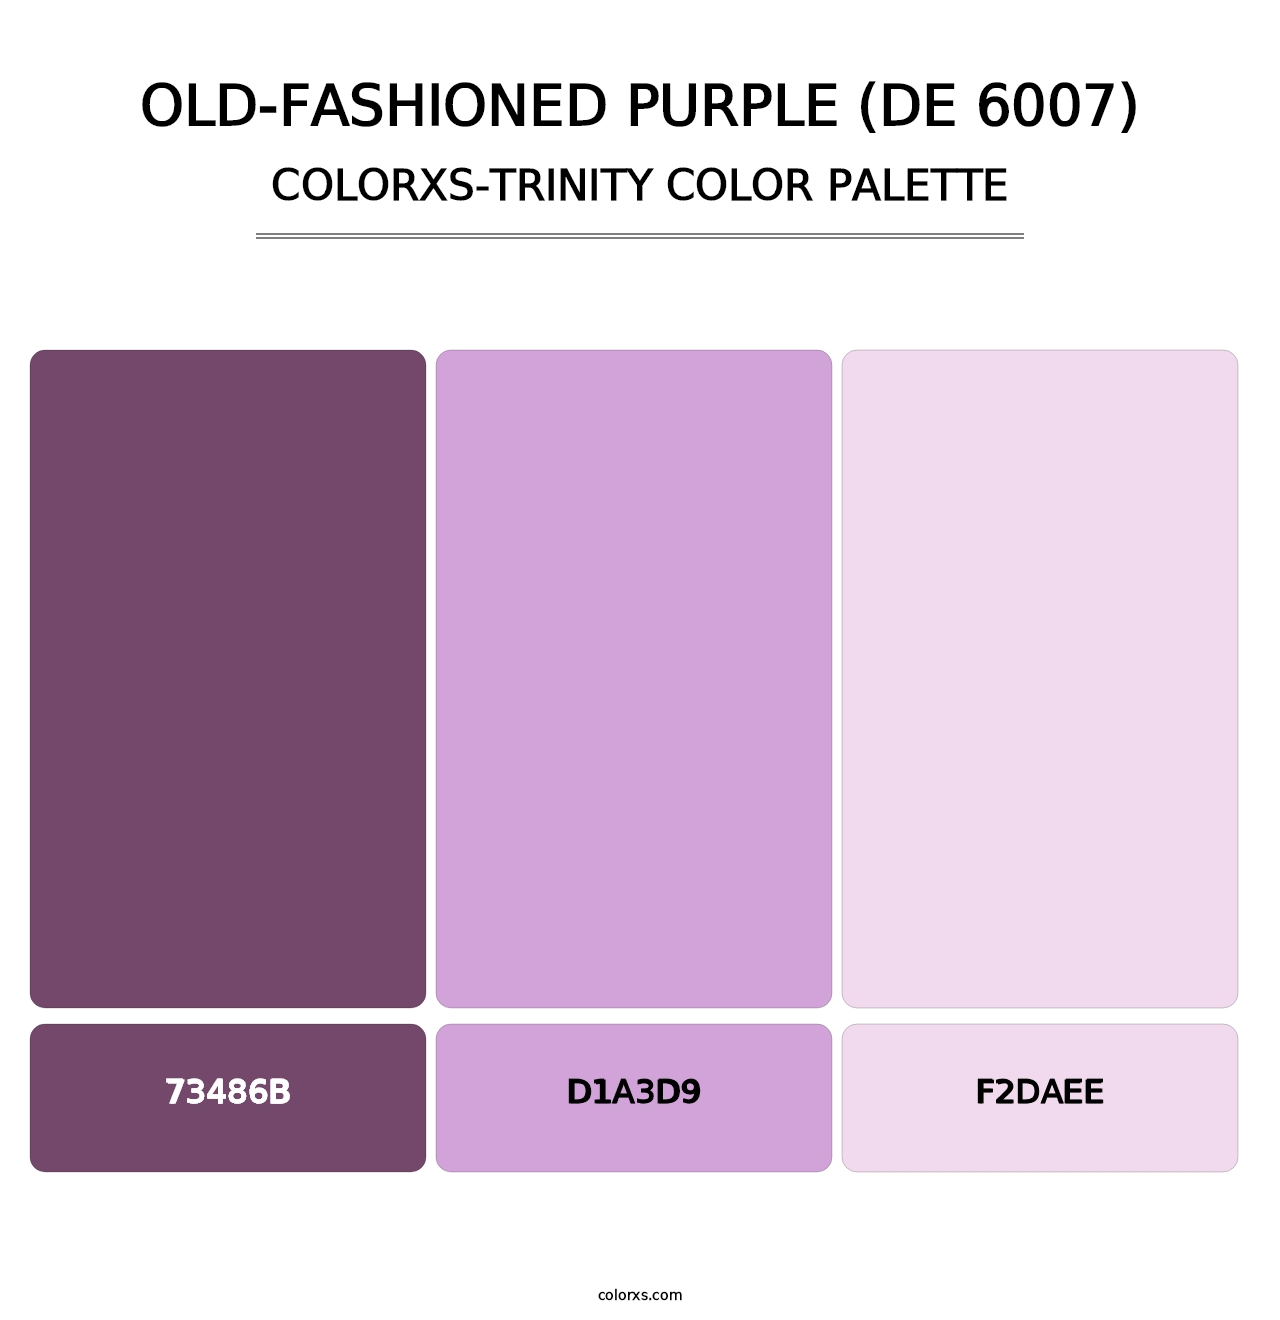 Old-Fashioned Purple (DE 6007) - Colorxs Trinity Palette